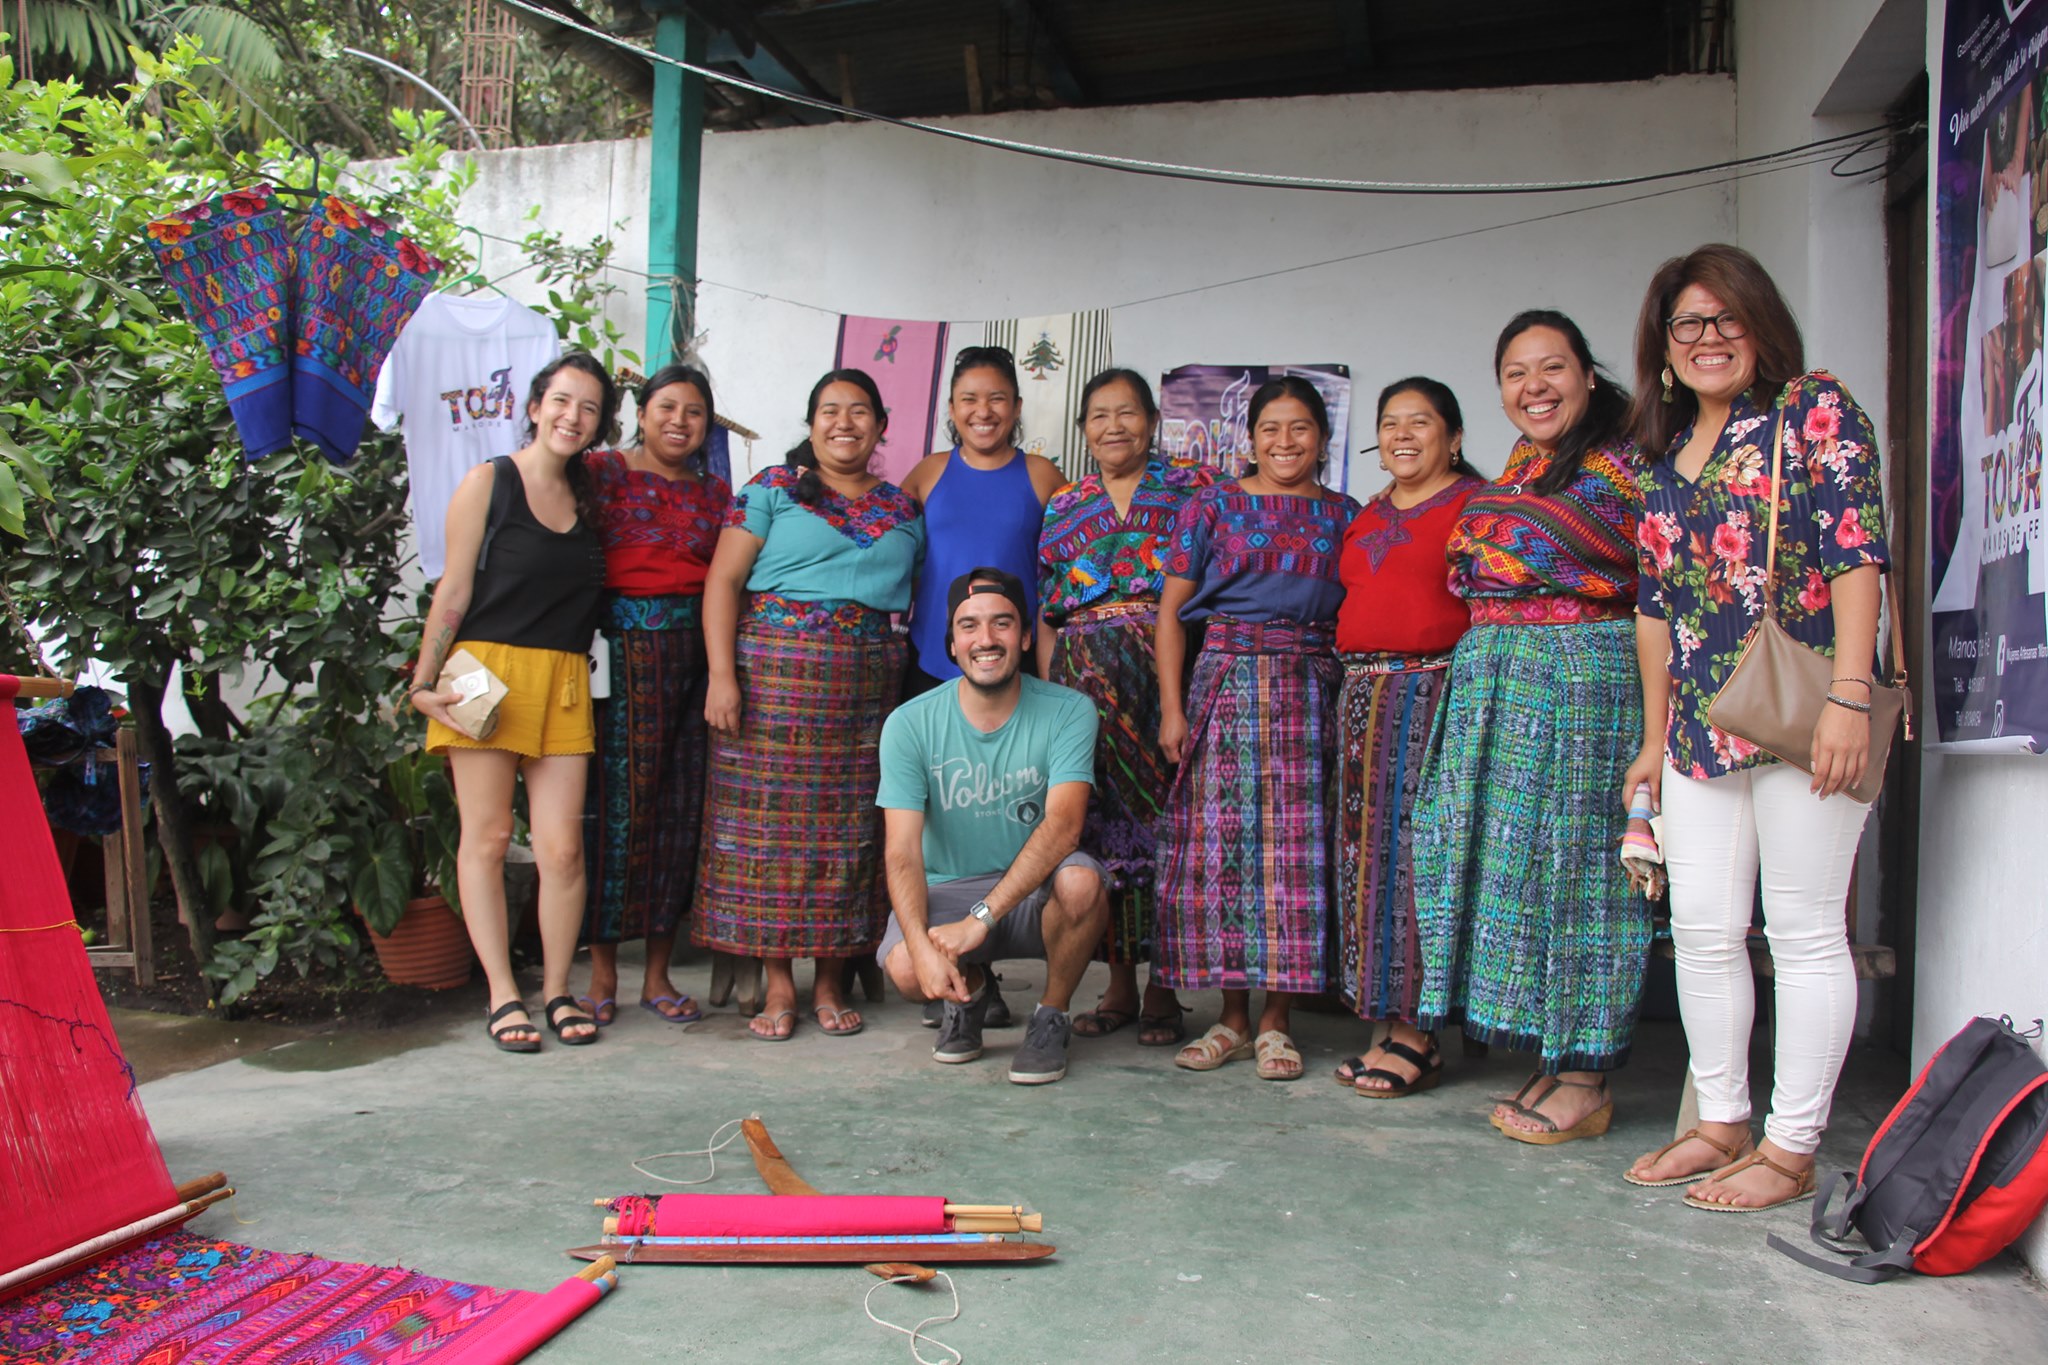 El equipo de Étnica Travel trabaja con grupos de tejedores, artesanos, pintores, entre otras actividades, de diversas comunidades. (Foto, Prensa Libre: Facebook de Étnica Travel).